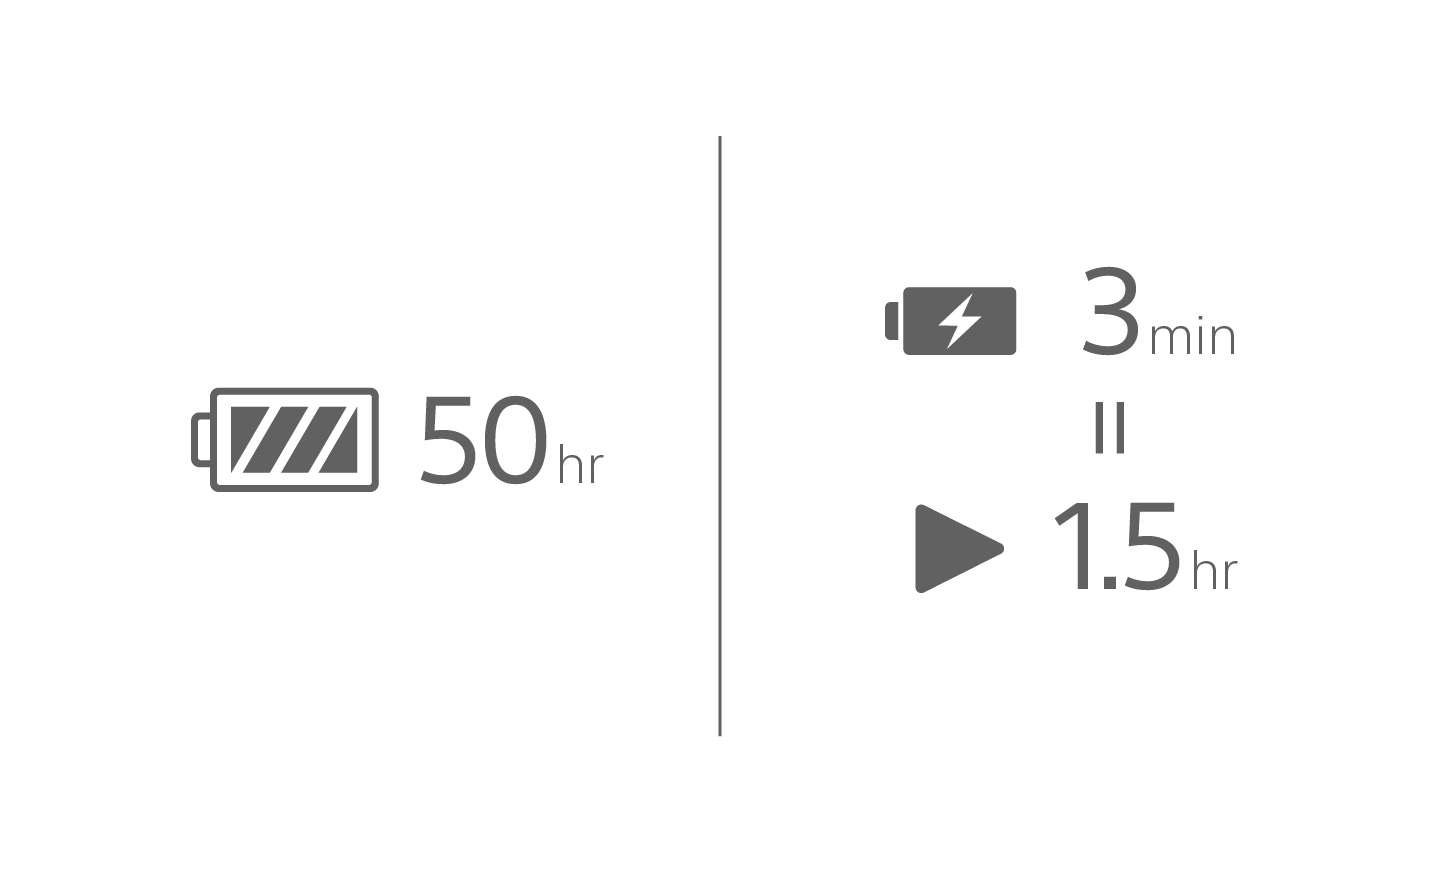 Изображение на иконка на батерия с текст 50 ч, иконка на зареждане на батерия с текст 3 мин над иконка за възпроизвеждане с текст 1,5 ч